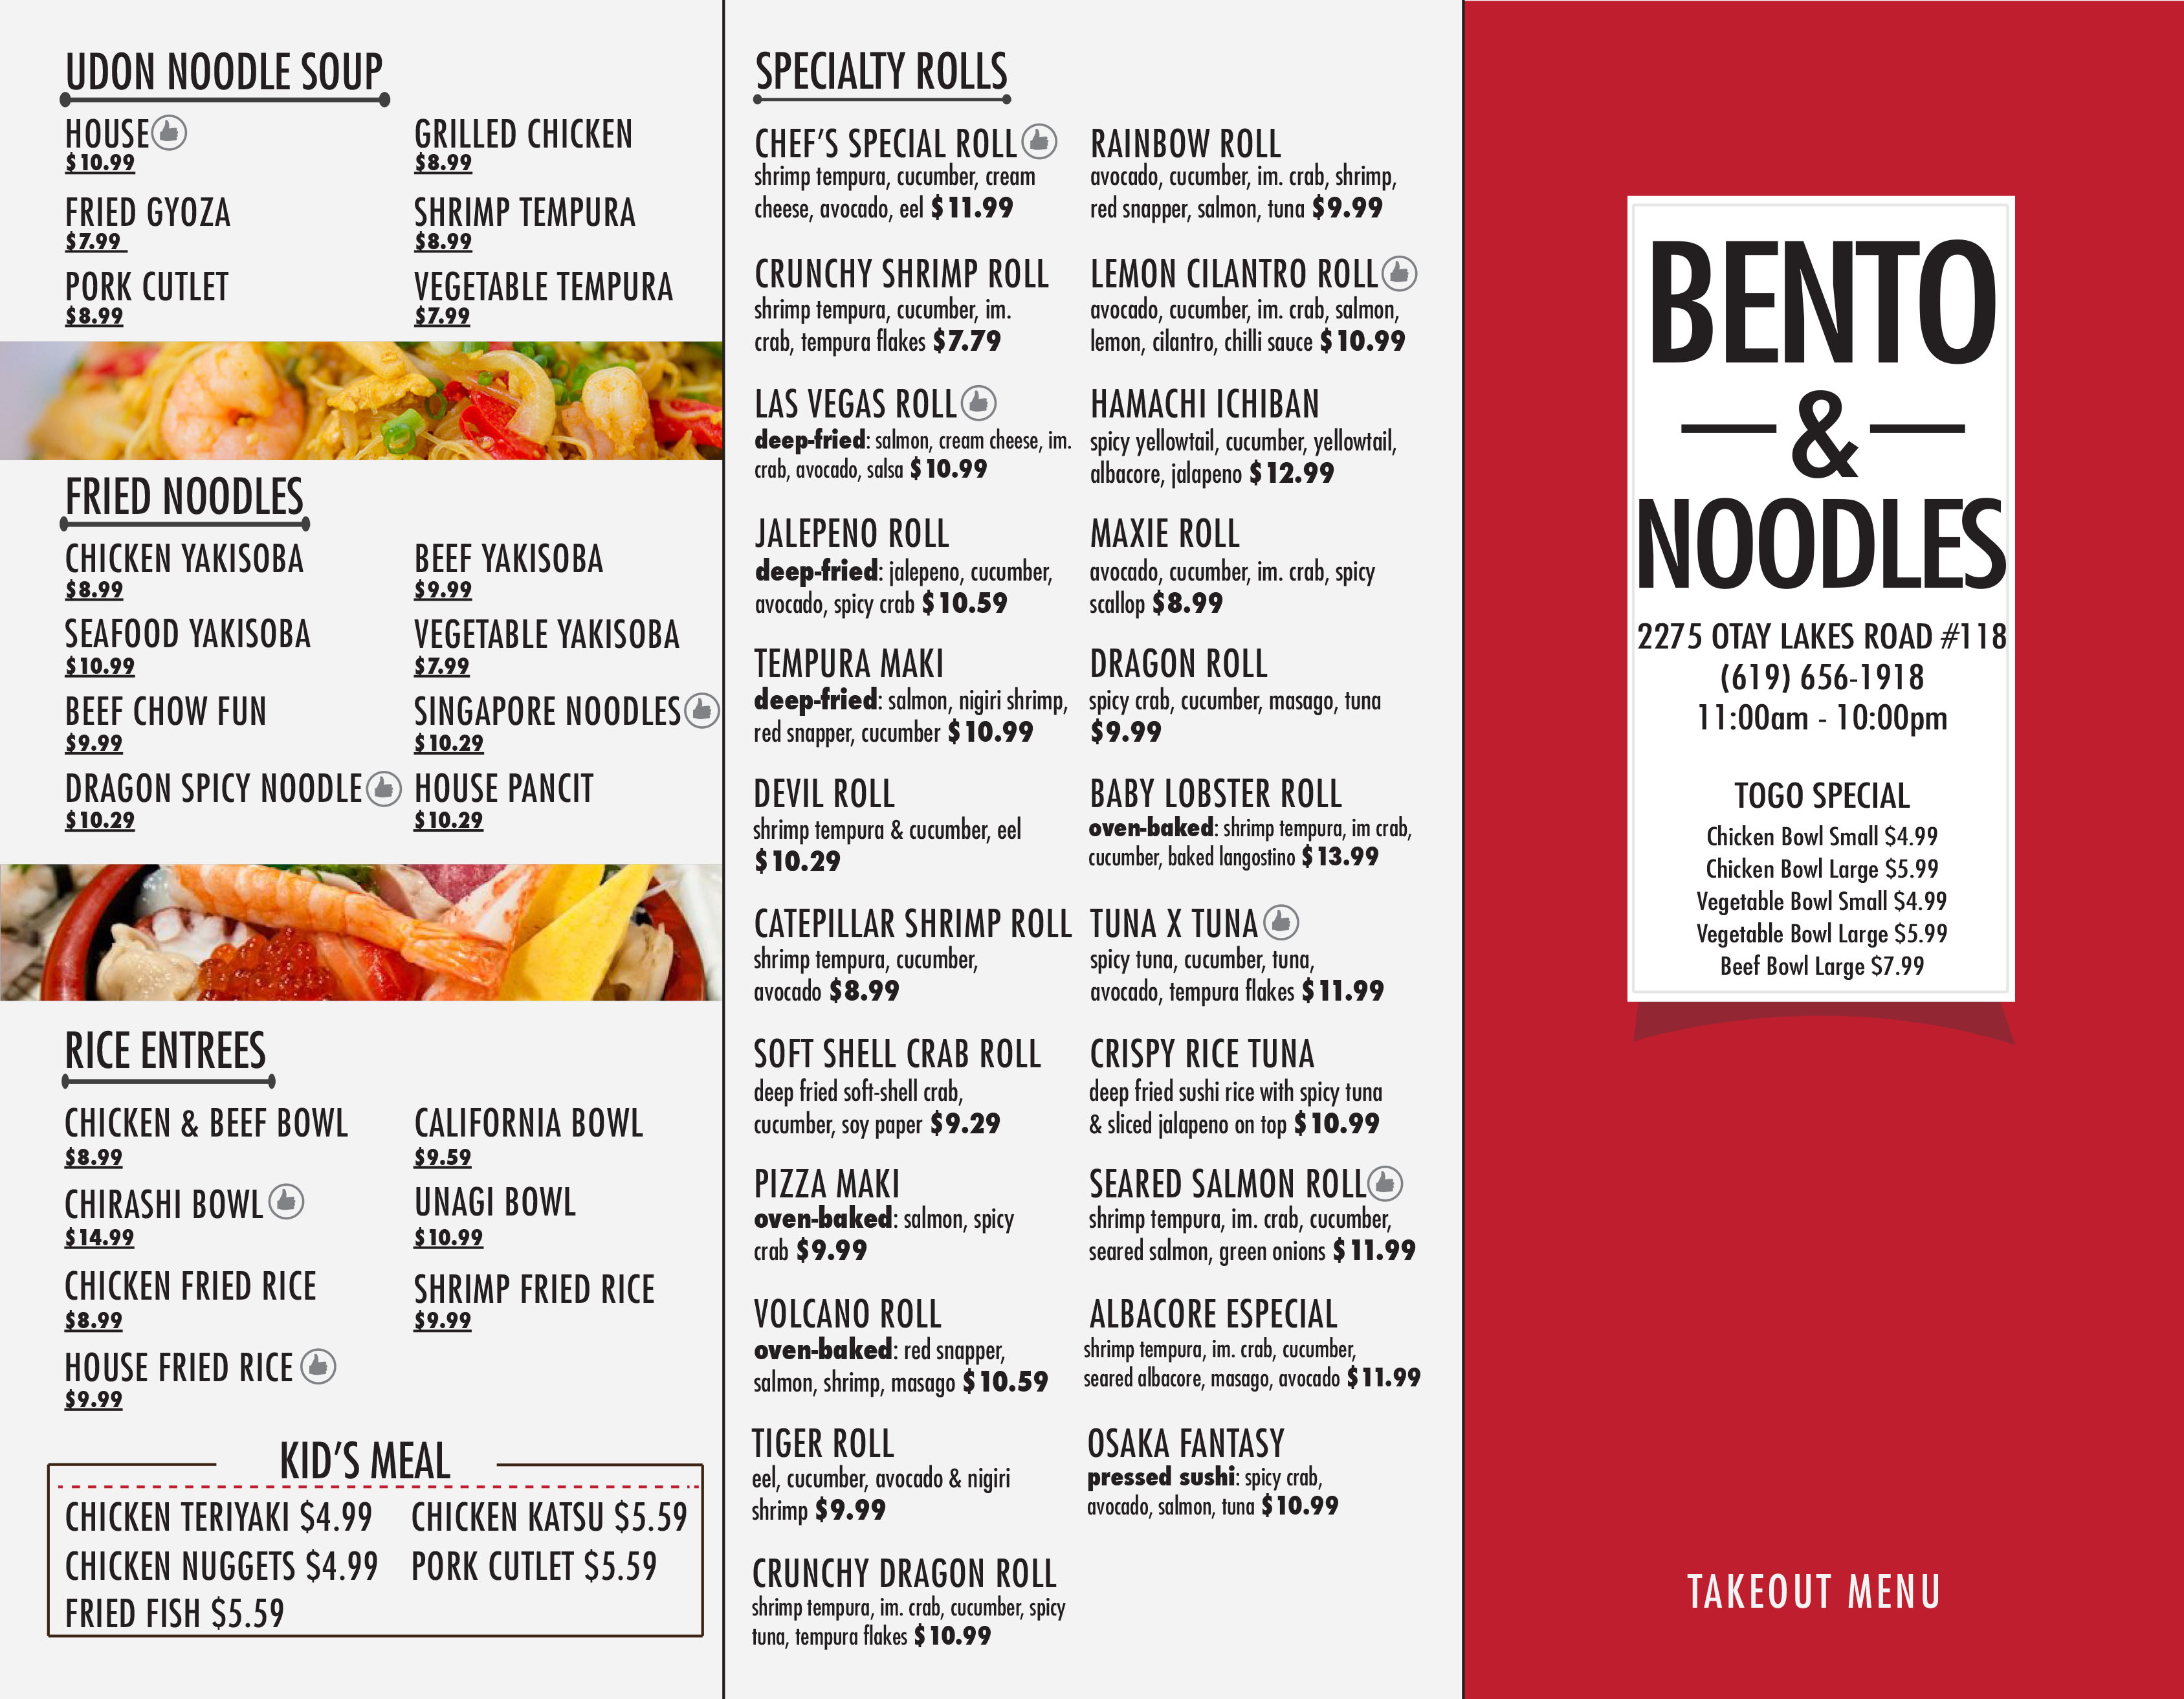 About Bento & Noodles